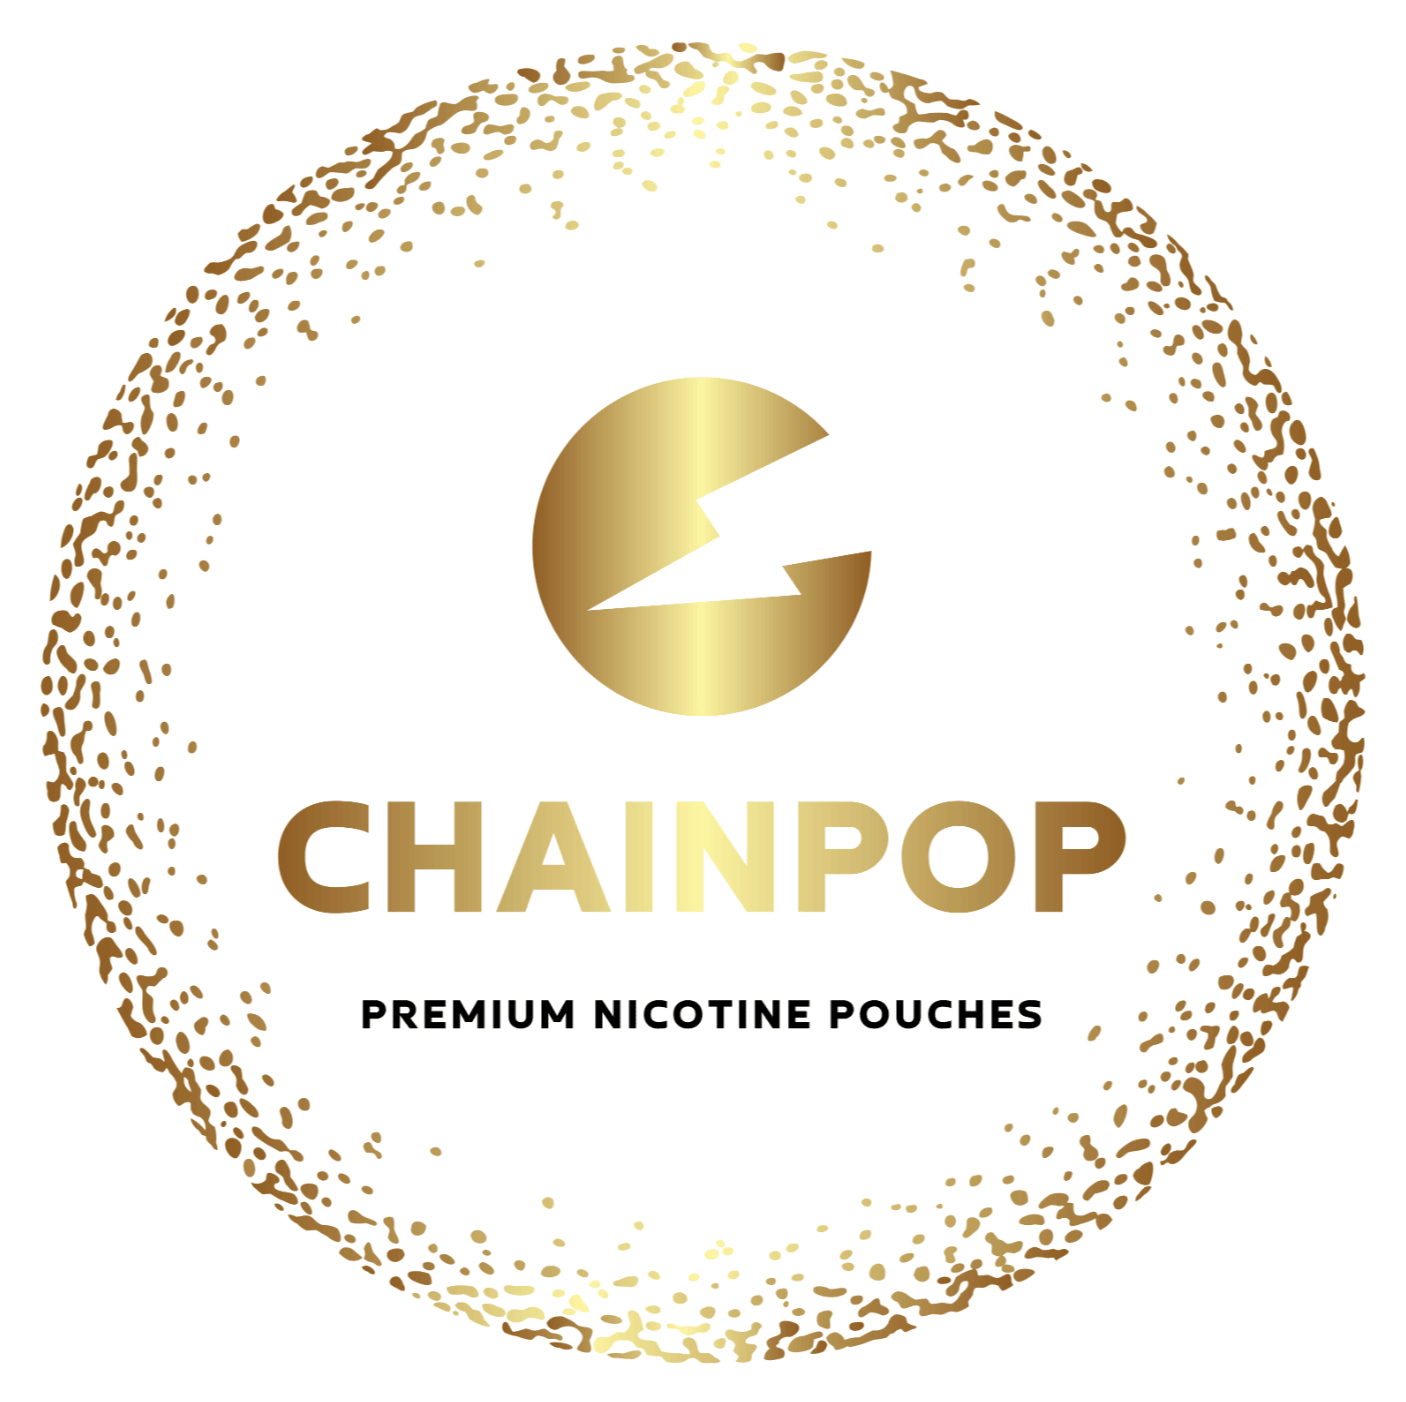 Bolsas de nicotina Chainpop logo